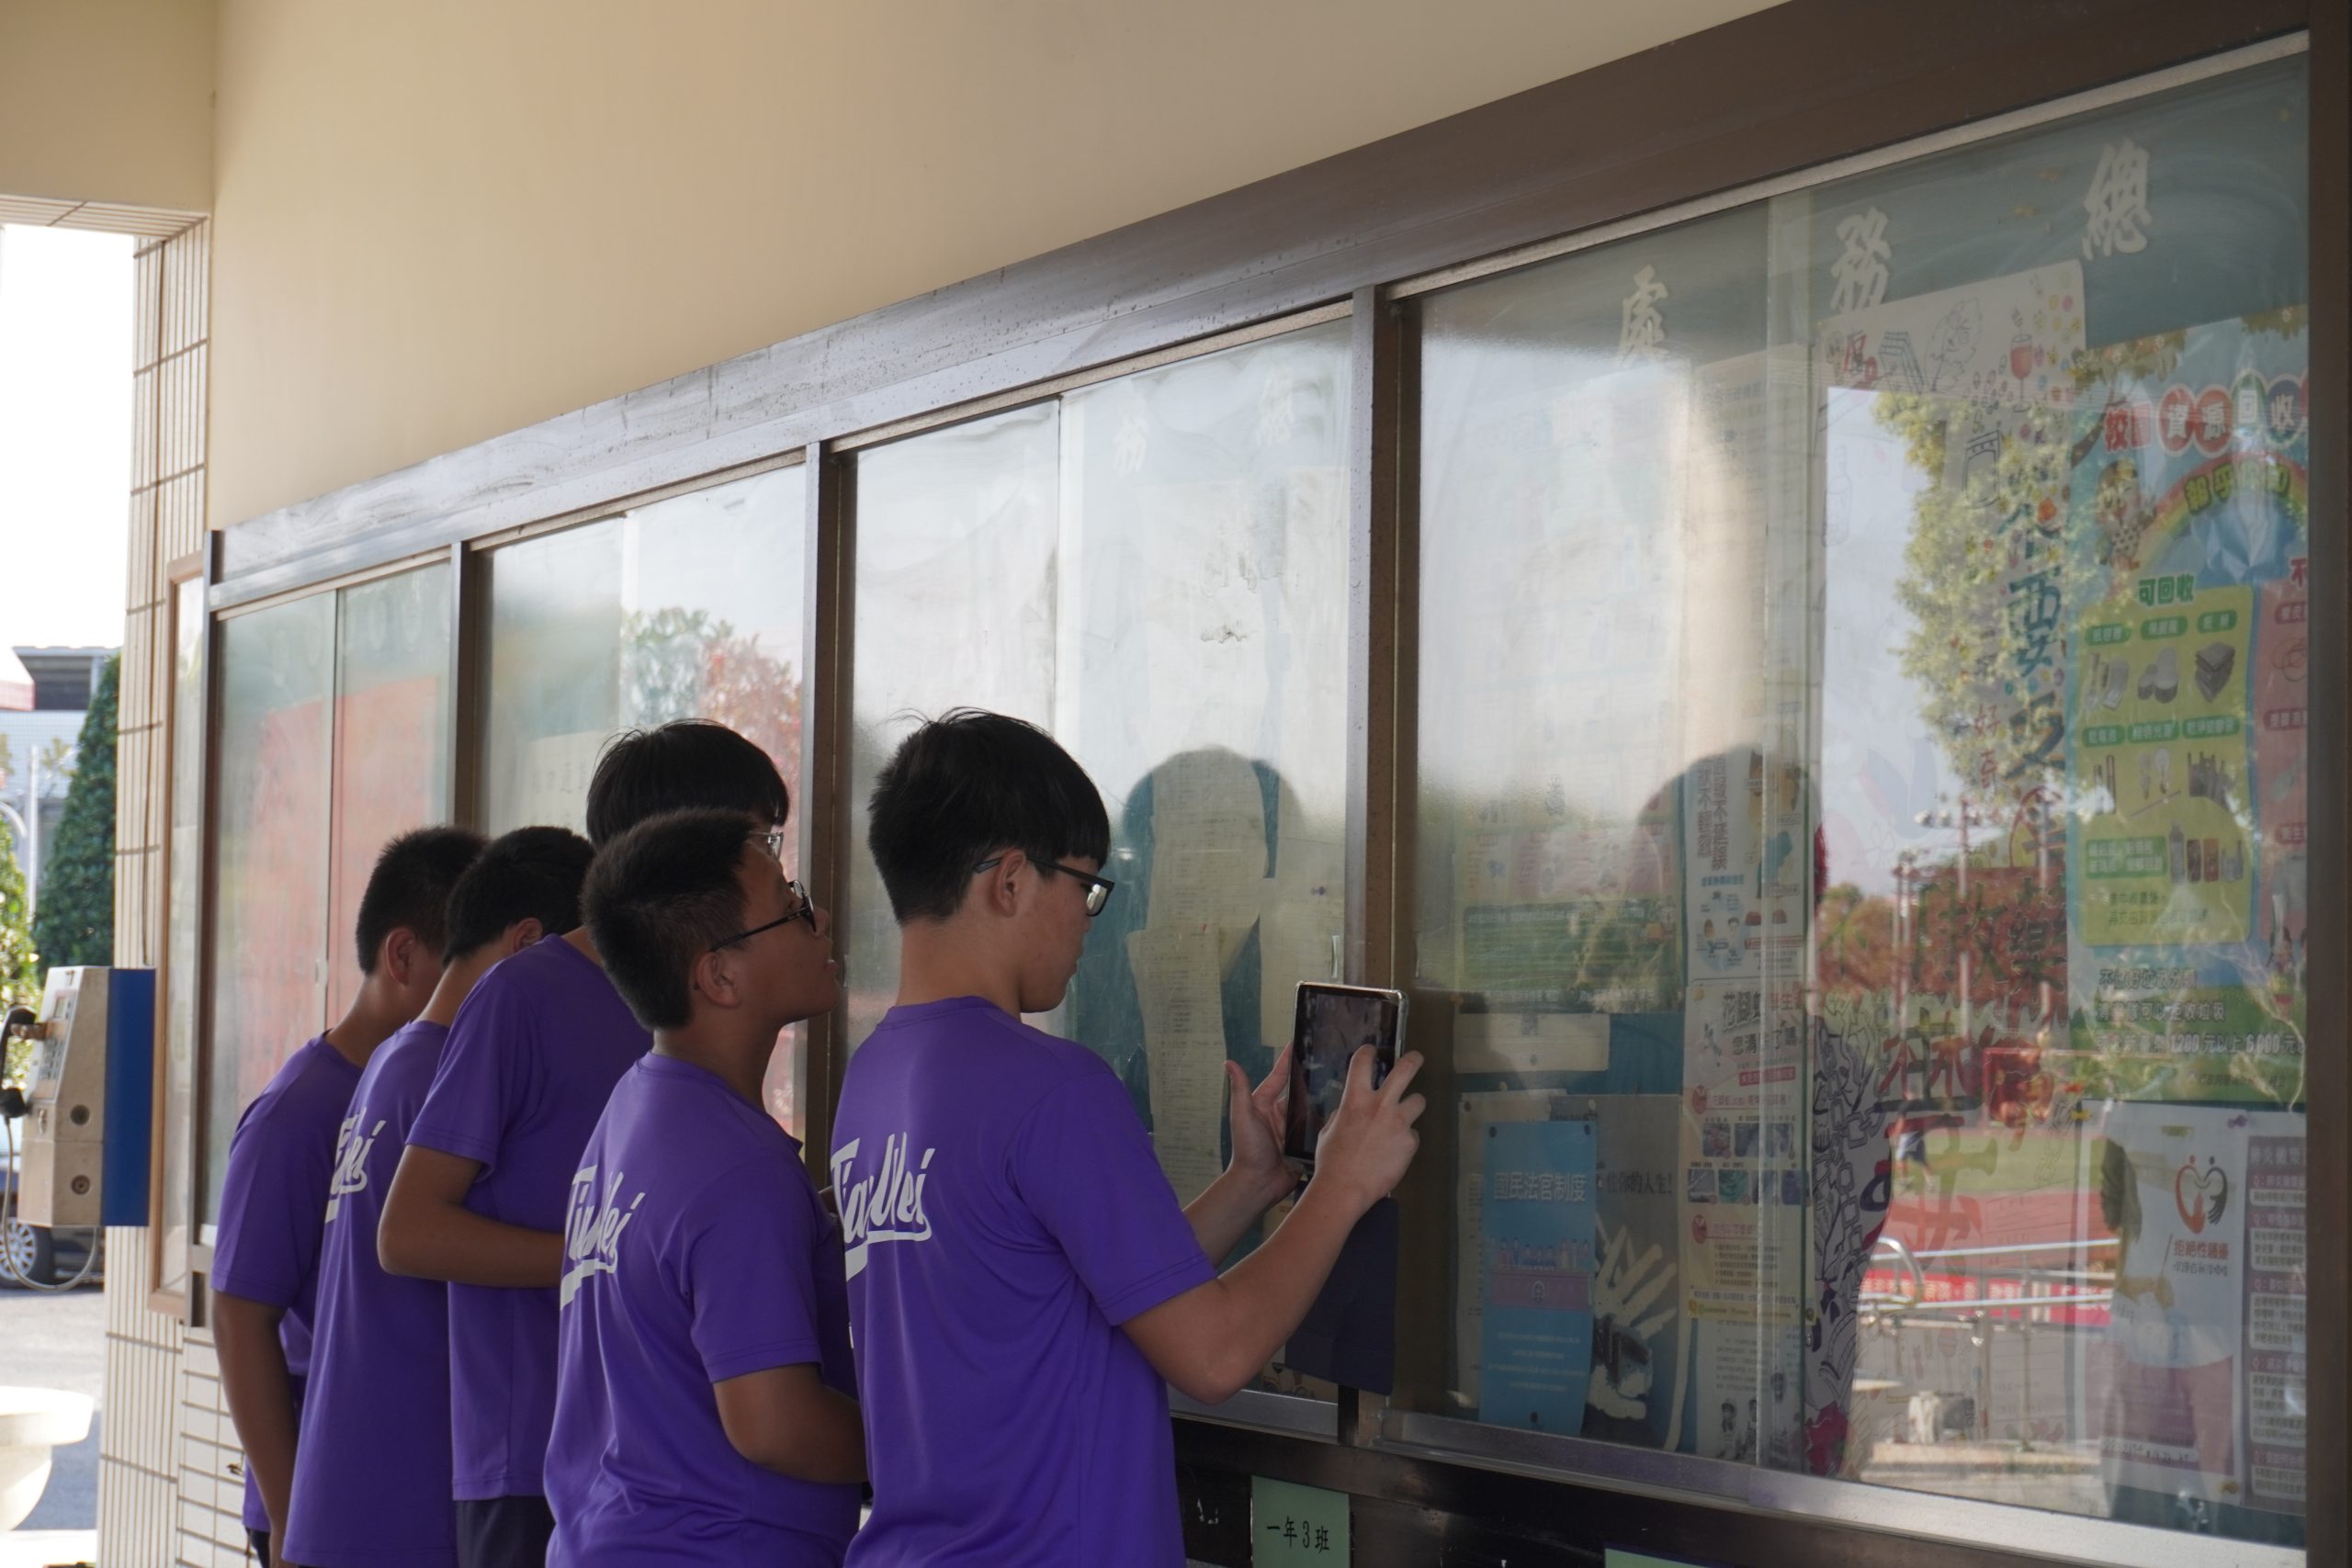 112學年度第一學期於彰化縣立田尾國民中學施辦自拍拼圖課程實作紀錄系列照片共20張